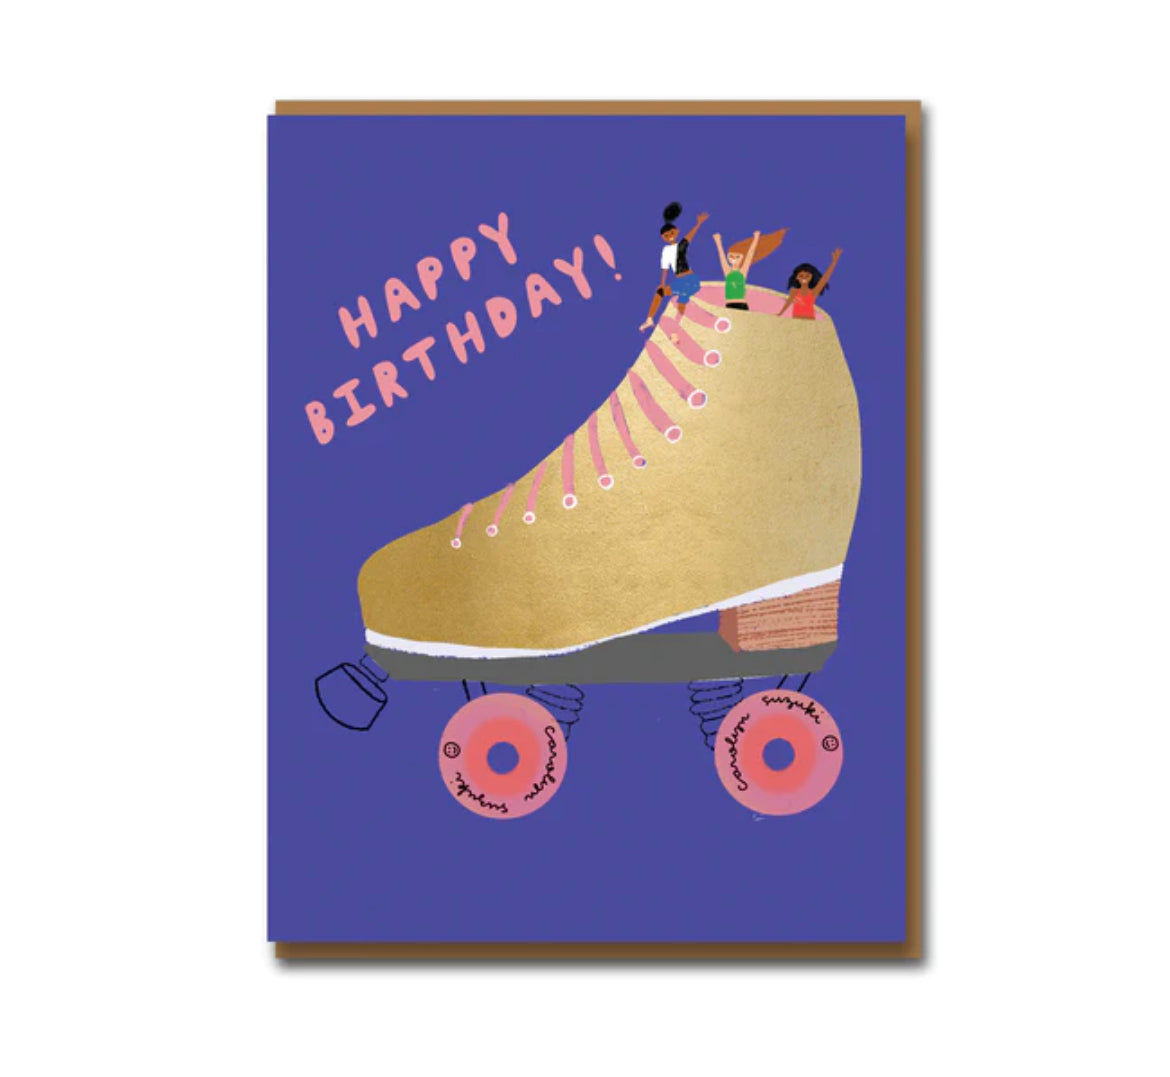 Golden Skater Birthday Card